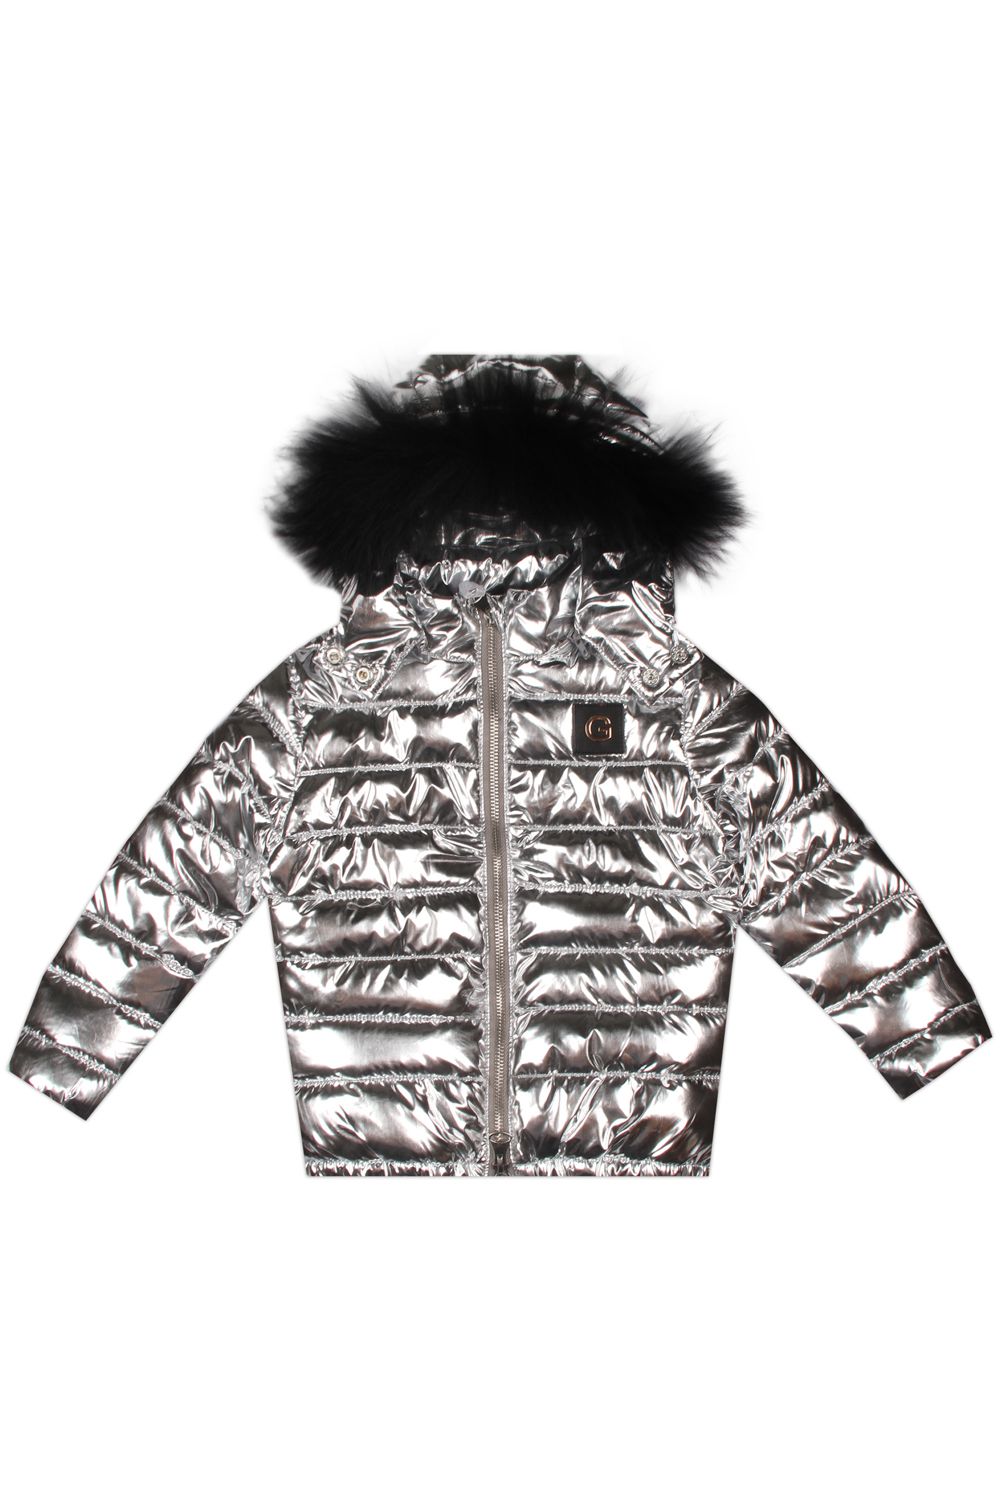 Куртка Gaialuna, размер 114, цвет серый G938/1 - фото 1